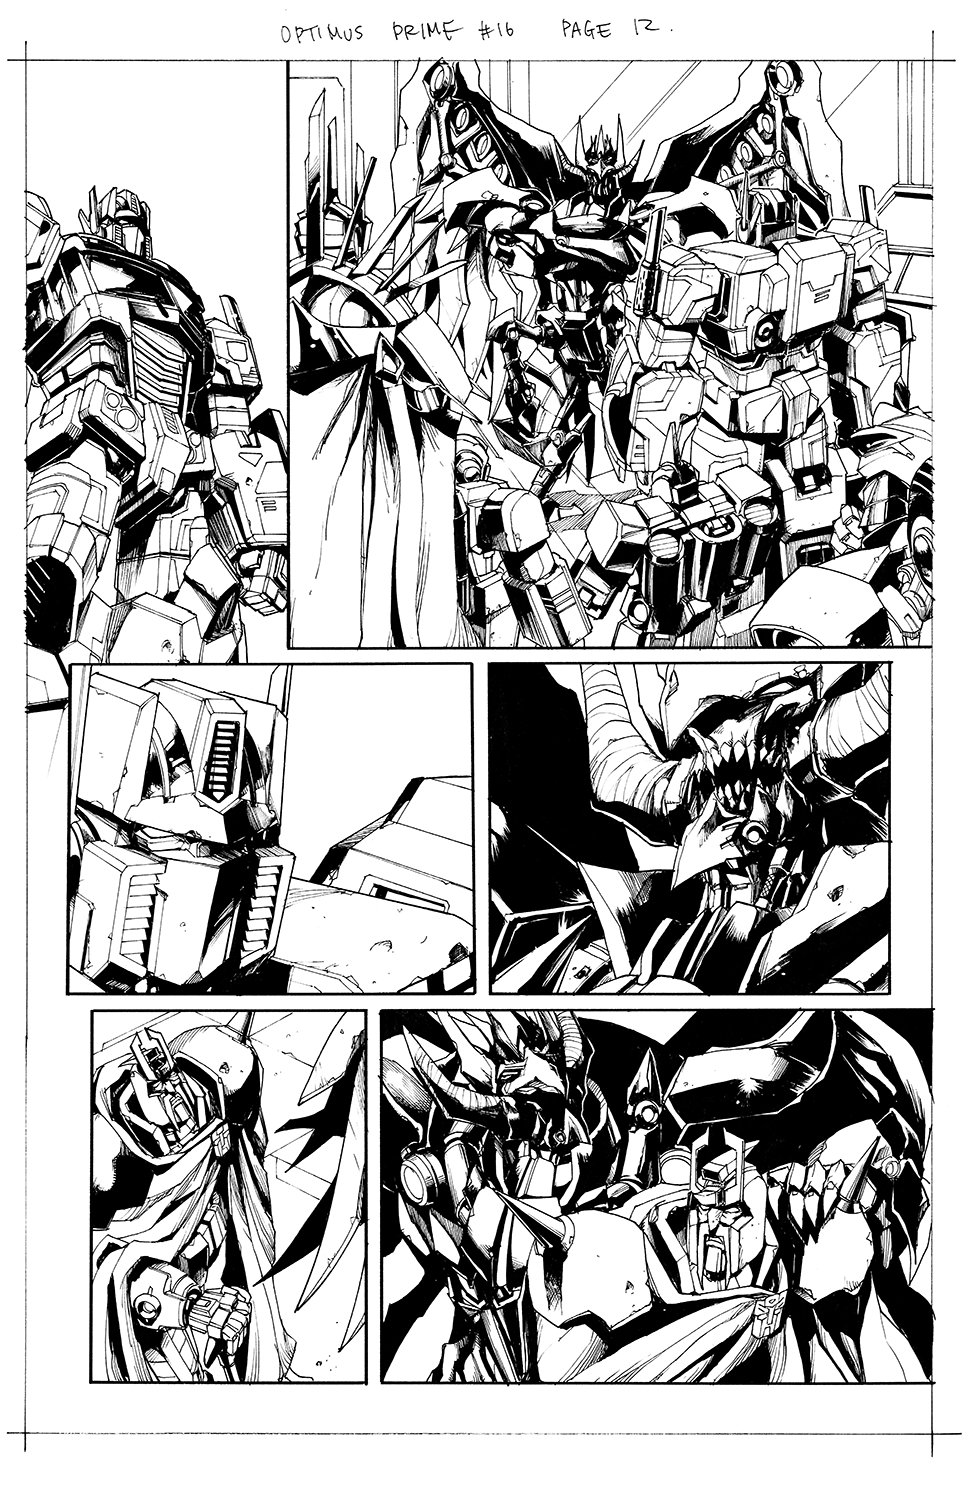 Optimus Prime #16 Page 12